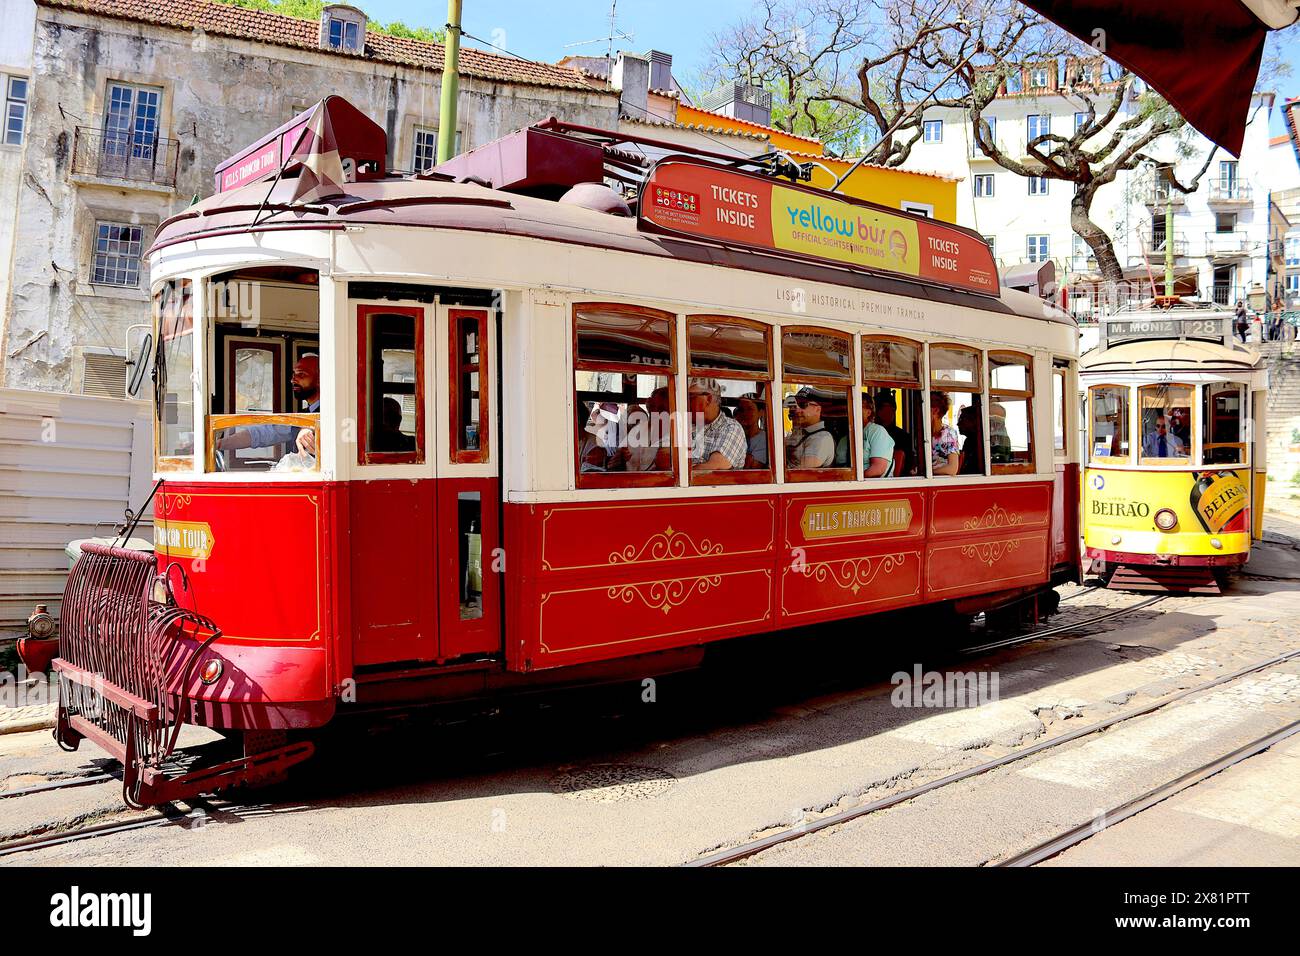 A causa della forte congestione del traffico automobilistico a Lisbona, i tram d'epoca si accumulano interrompendo i rispettivi orari di marcia. Foto Stock